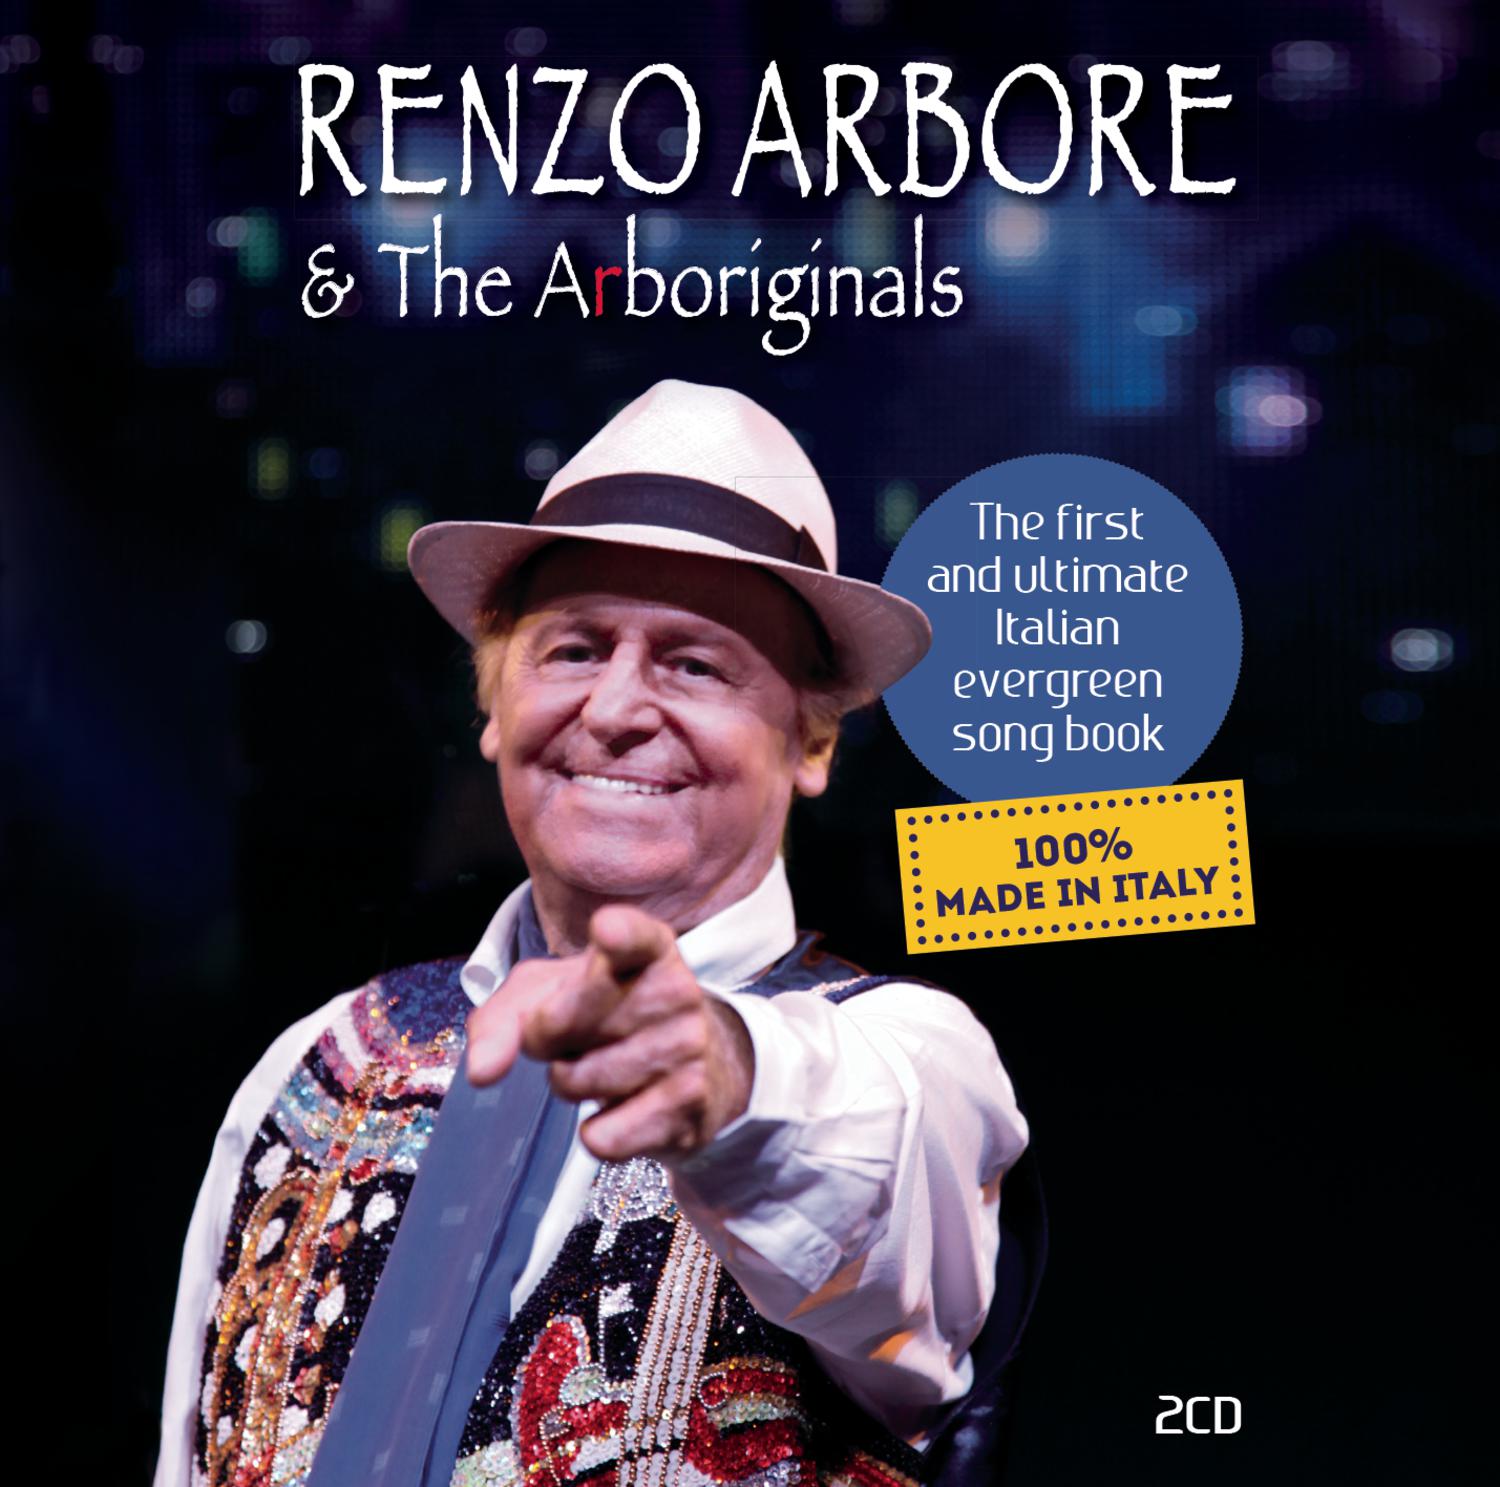 Renzo Arbore & the Arboriginals